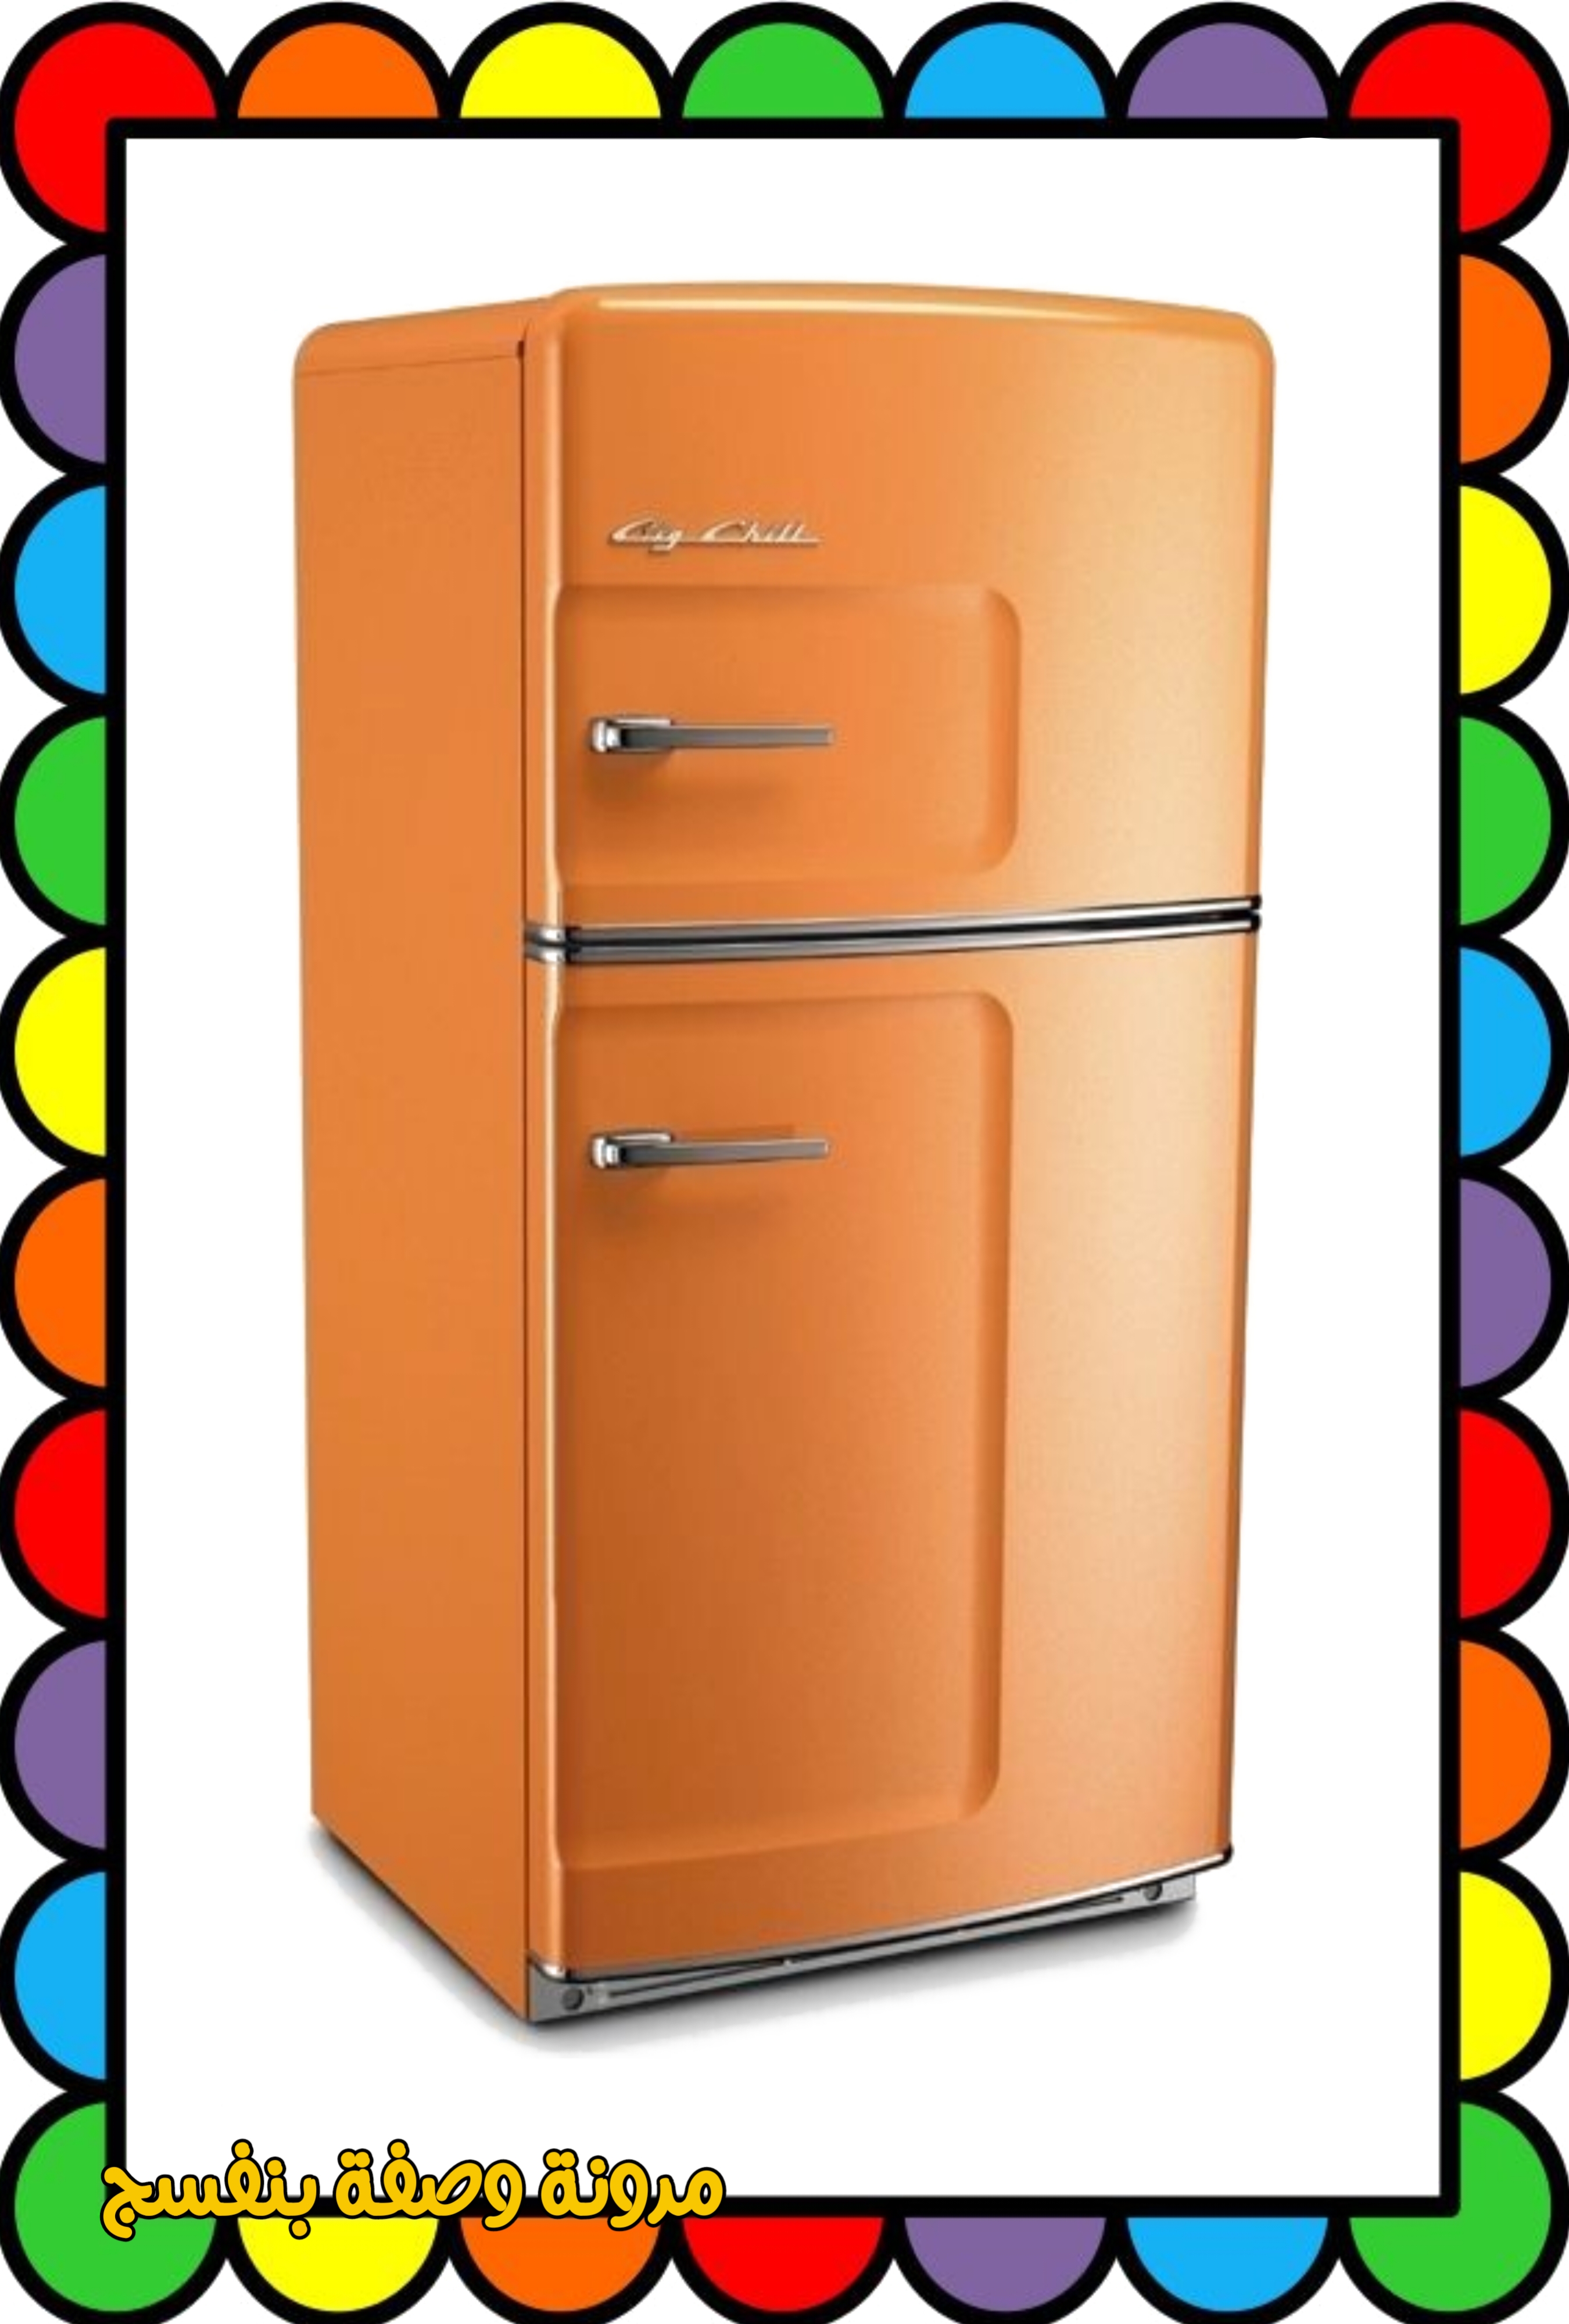 Купить холодильник в алматы. Холодильник ретро бош КДЛ 19468. Холодильник City Chill ретро. Холодильник ретро Ascoli arsrs118. Холодильник Биг чил.